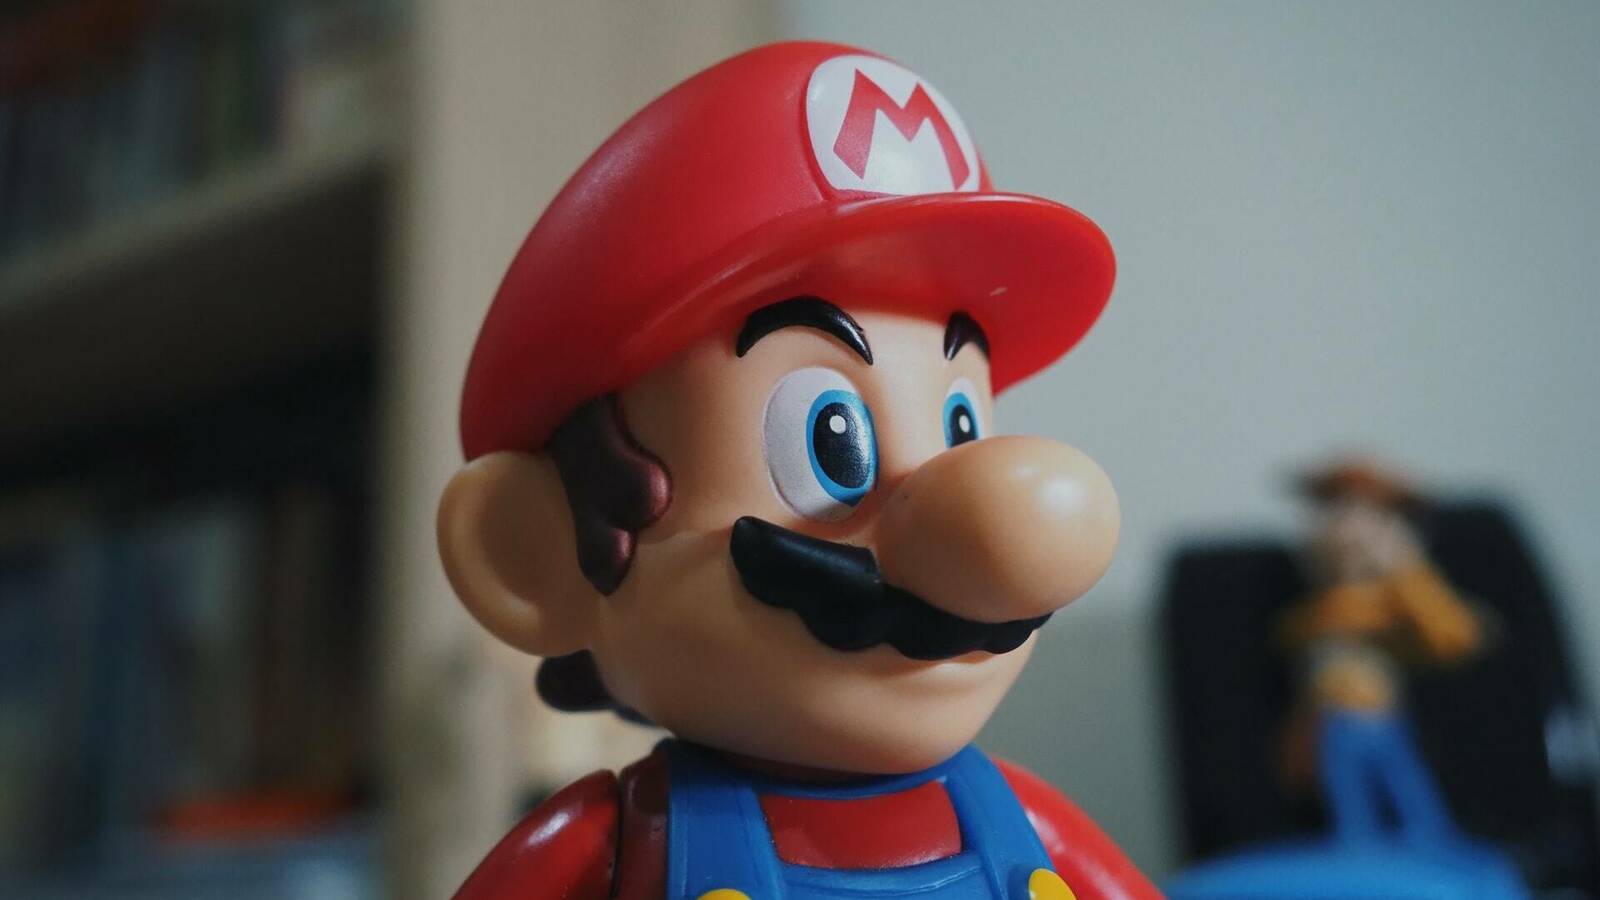 Subastan un videojuego de "Super Mario 64" por 1,56 millones de dólares